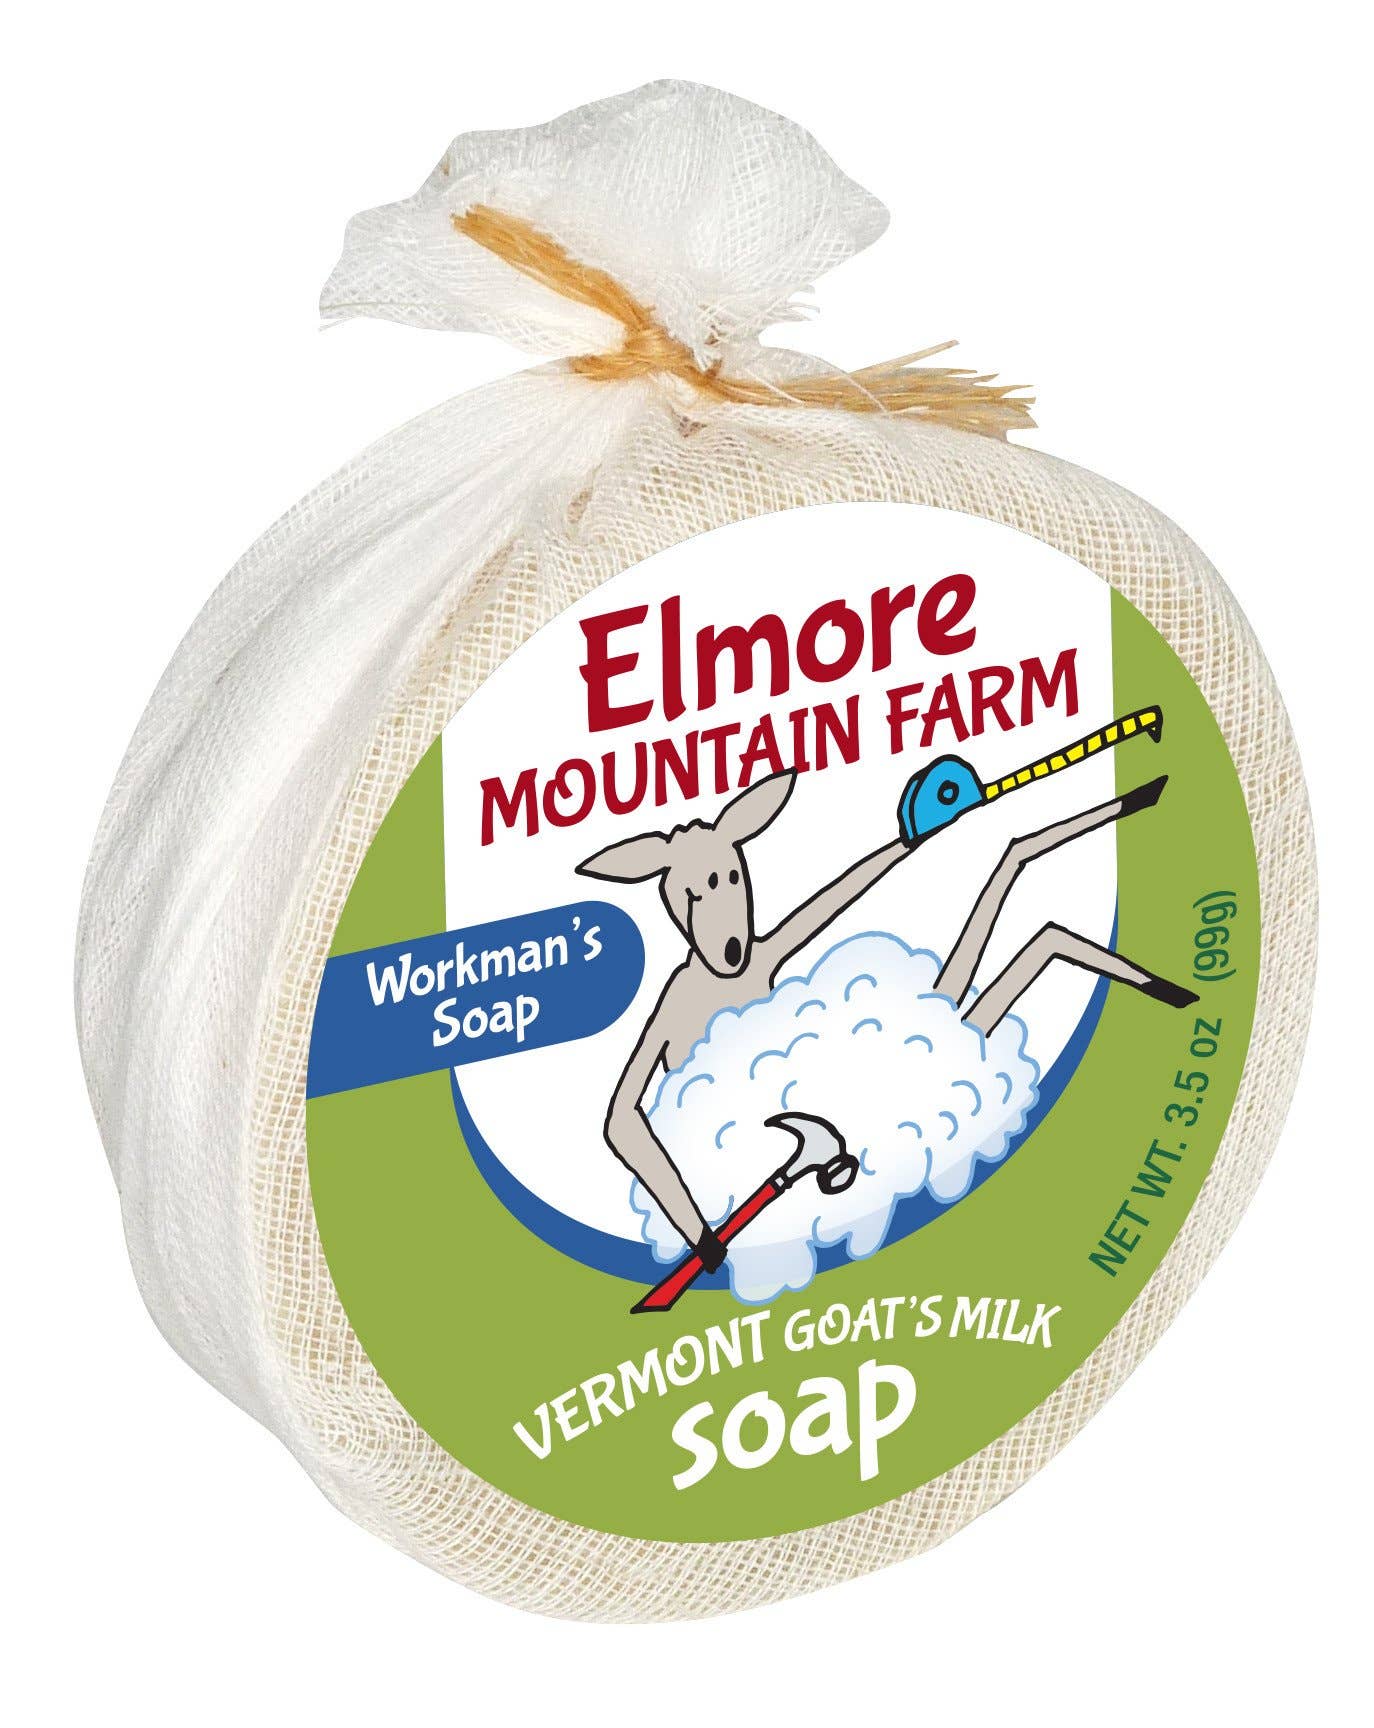 elmore mountain farm - Workman's Soap: 3.5 oz